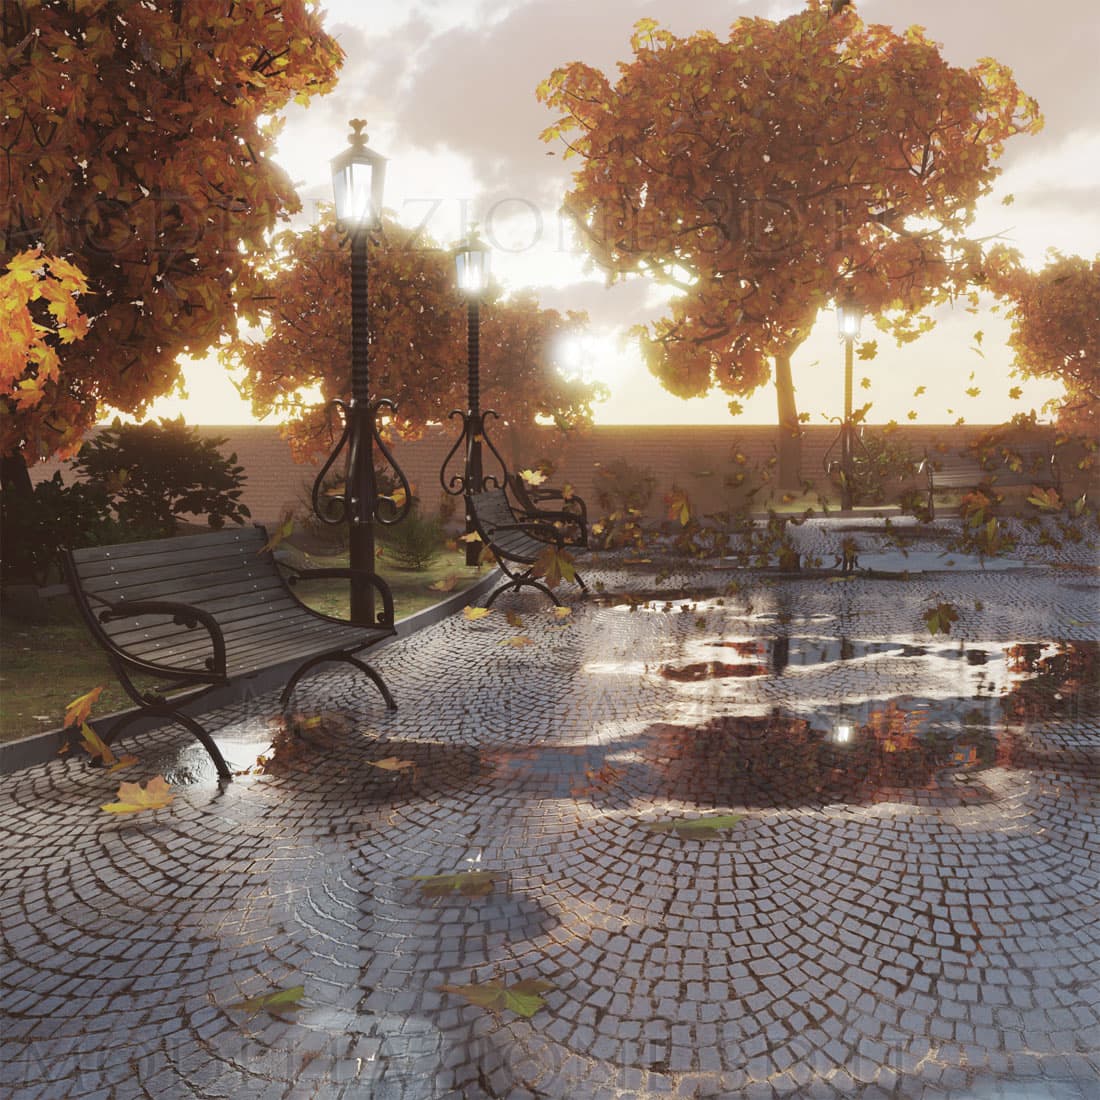 Scena giardino pubblico in autunno con foglie al vento 3D